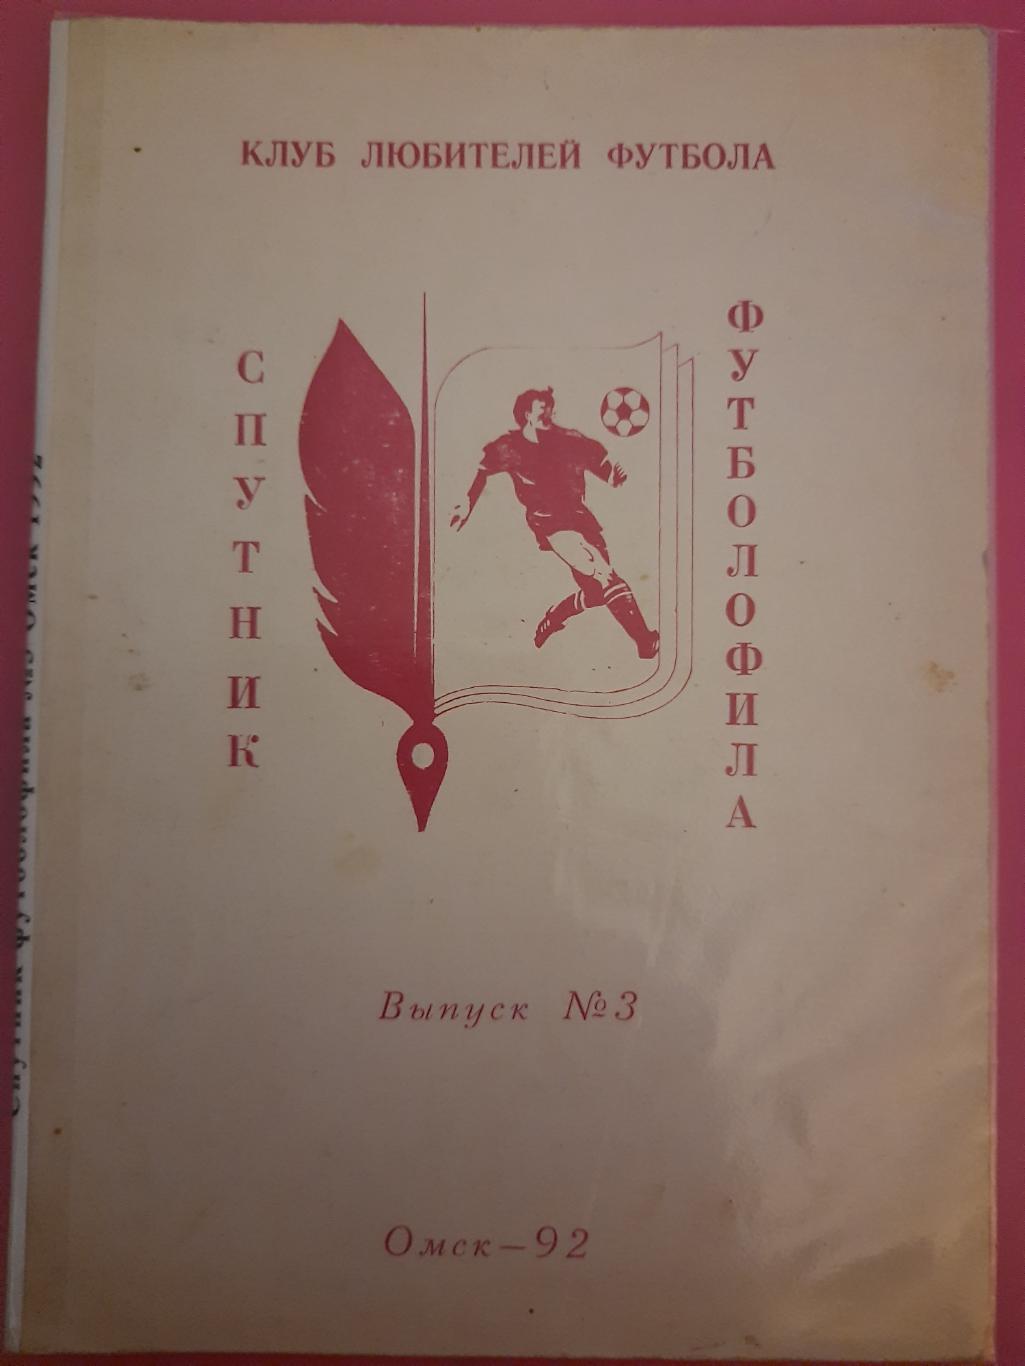 Спутник футболофила #3, Омск 1991